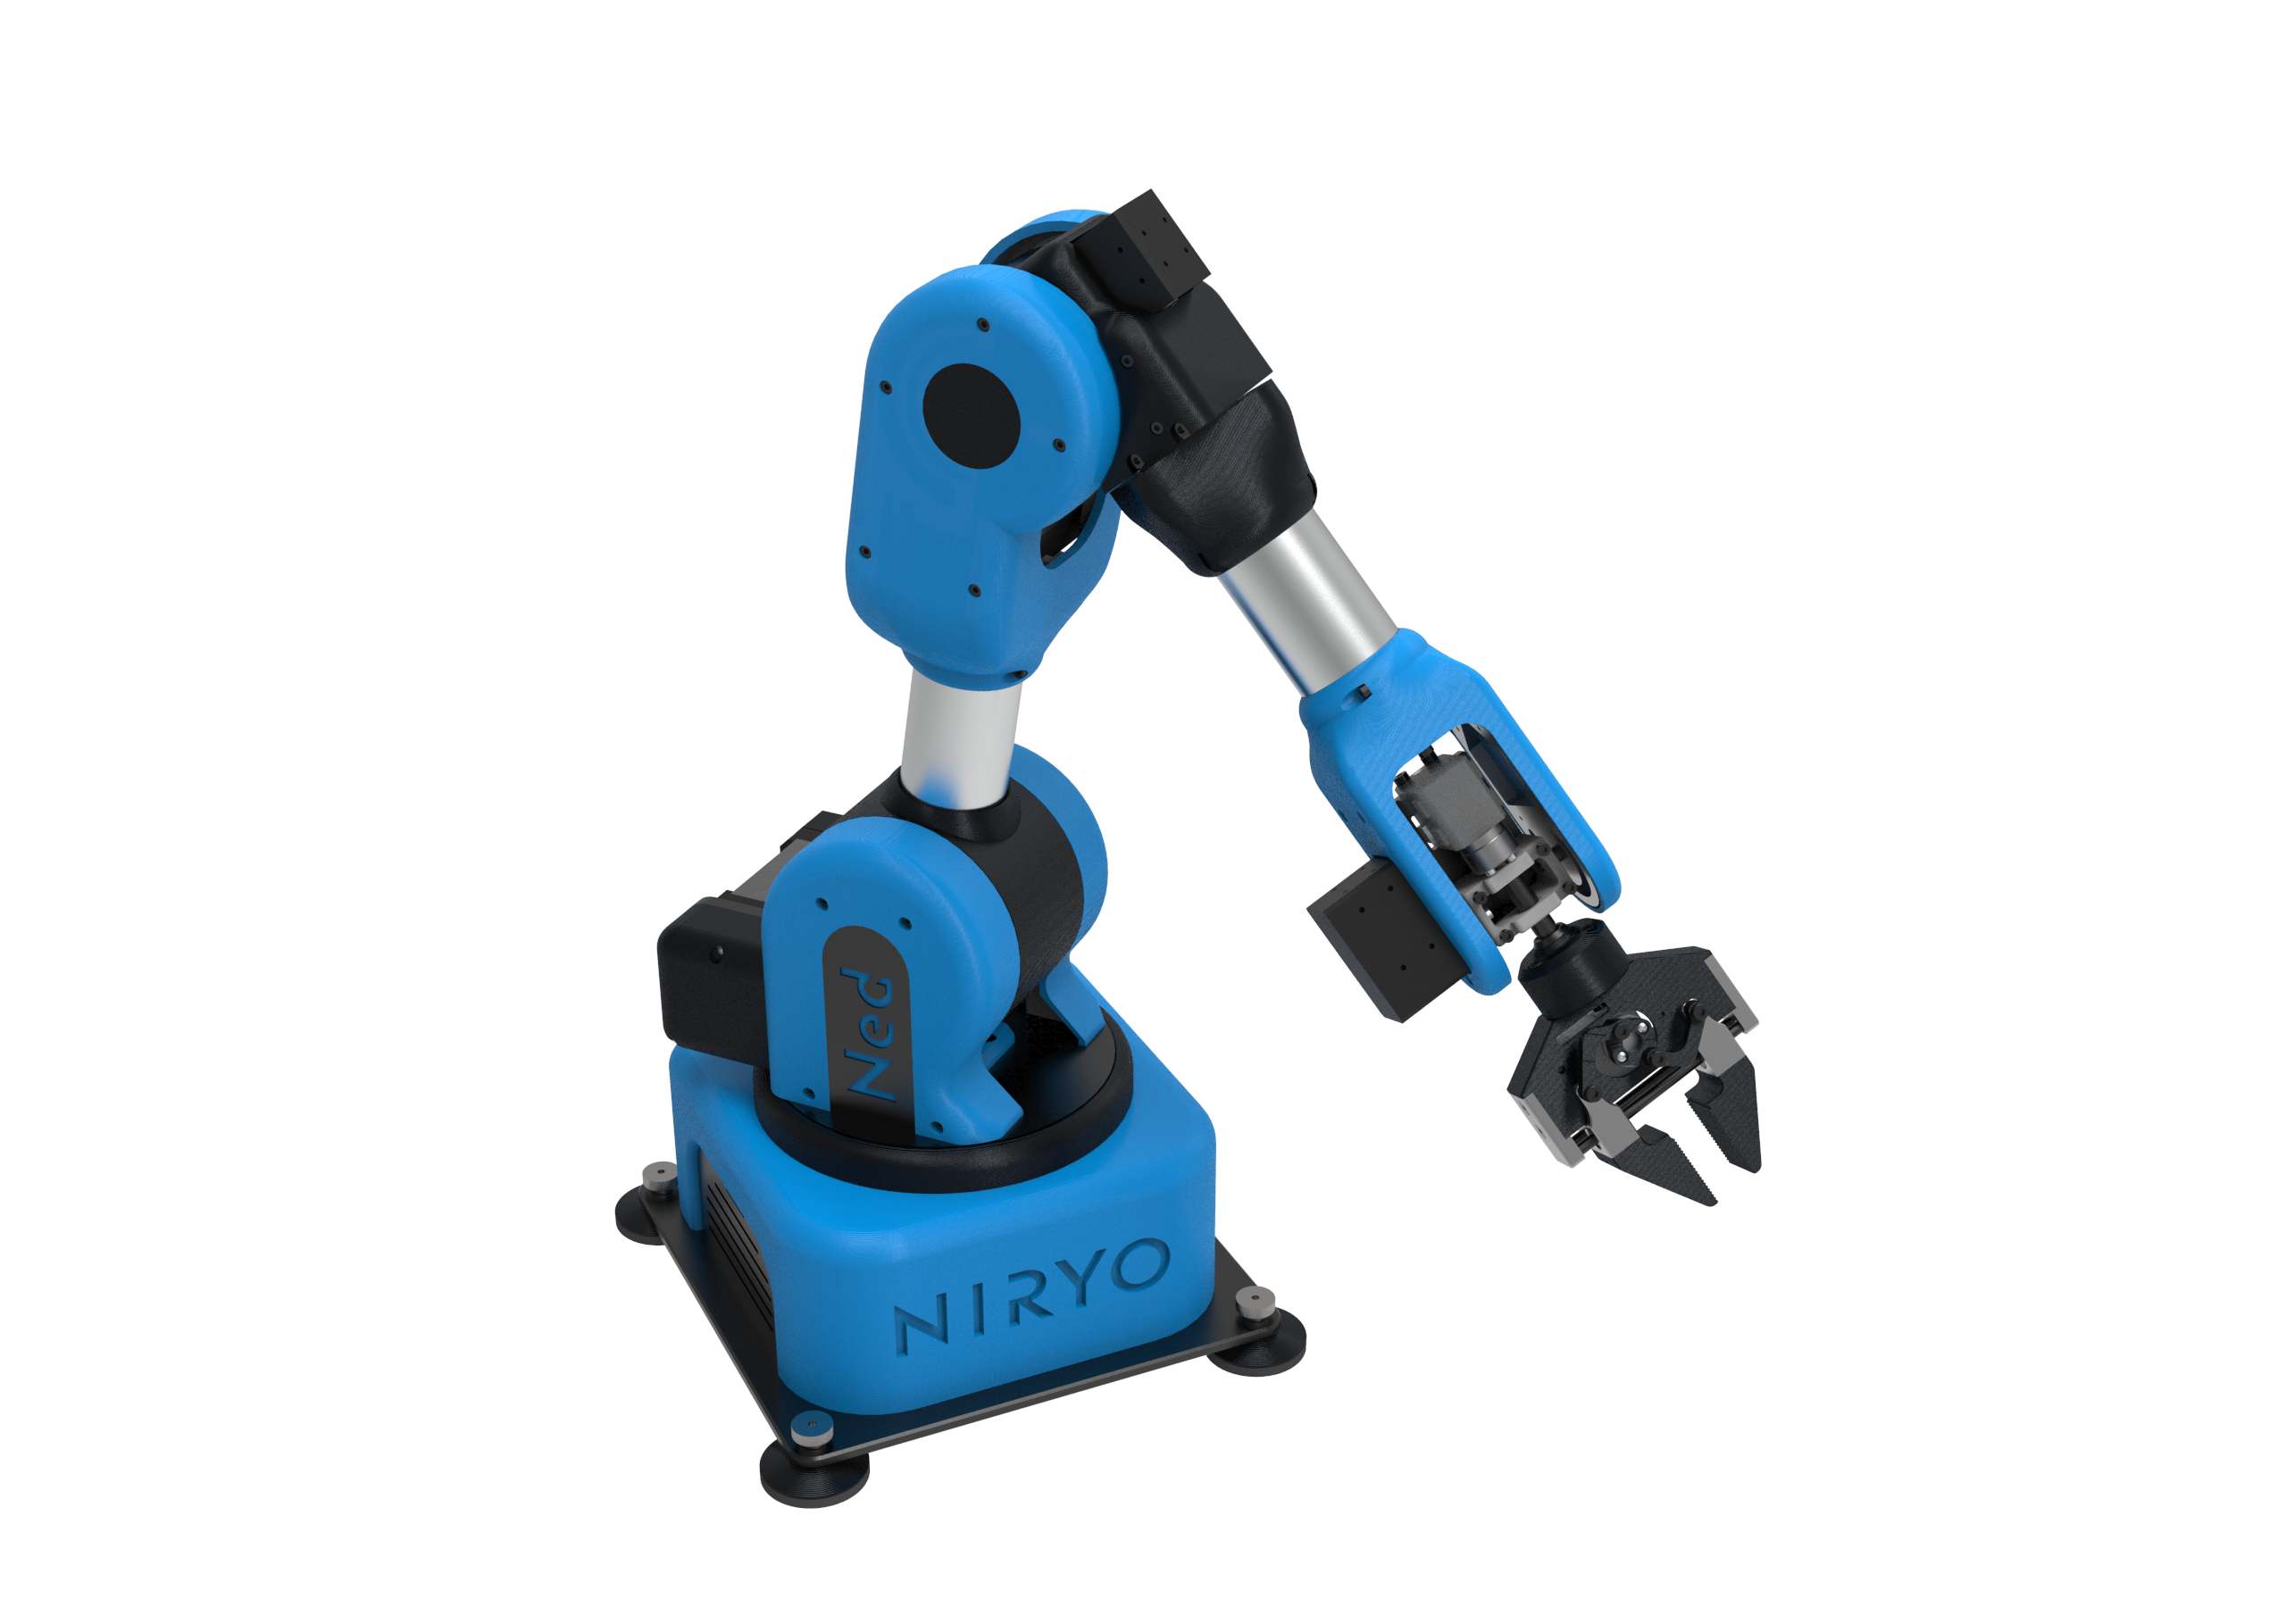 Niryo One 6 axis Robot Arm